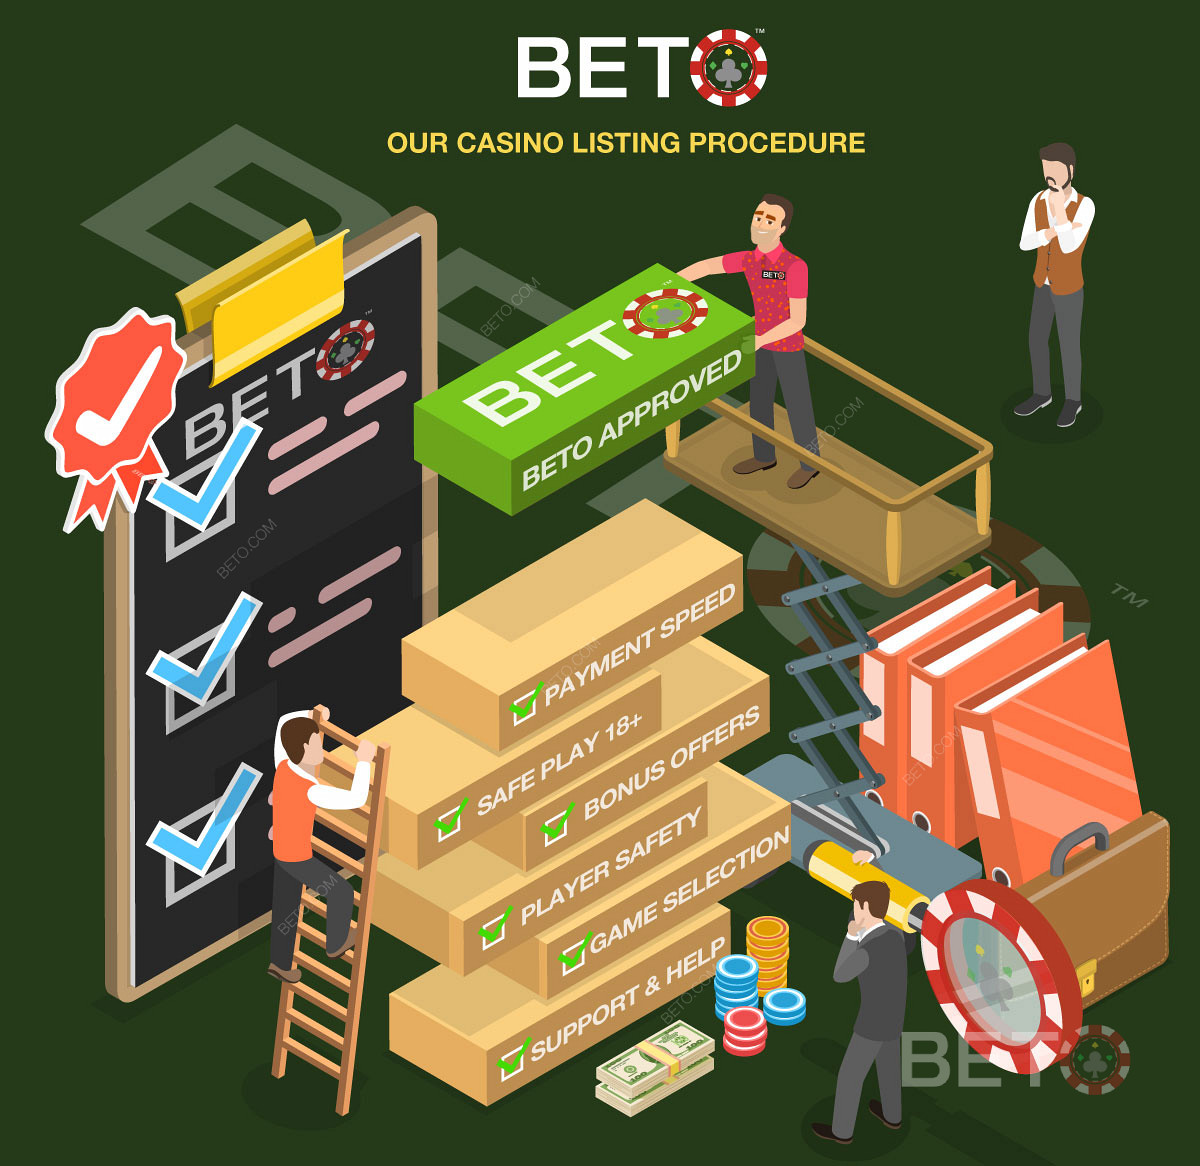 Szczegółowy proces recenzji kasyna na BETO.com